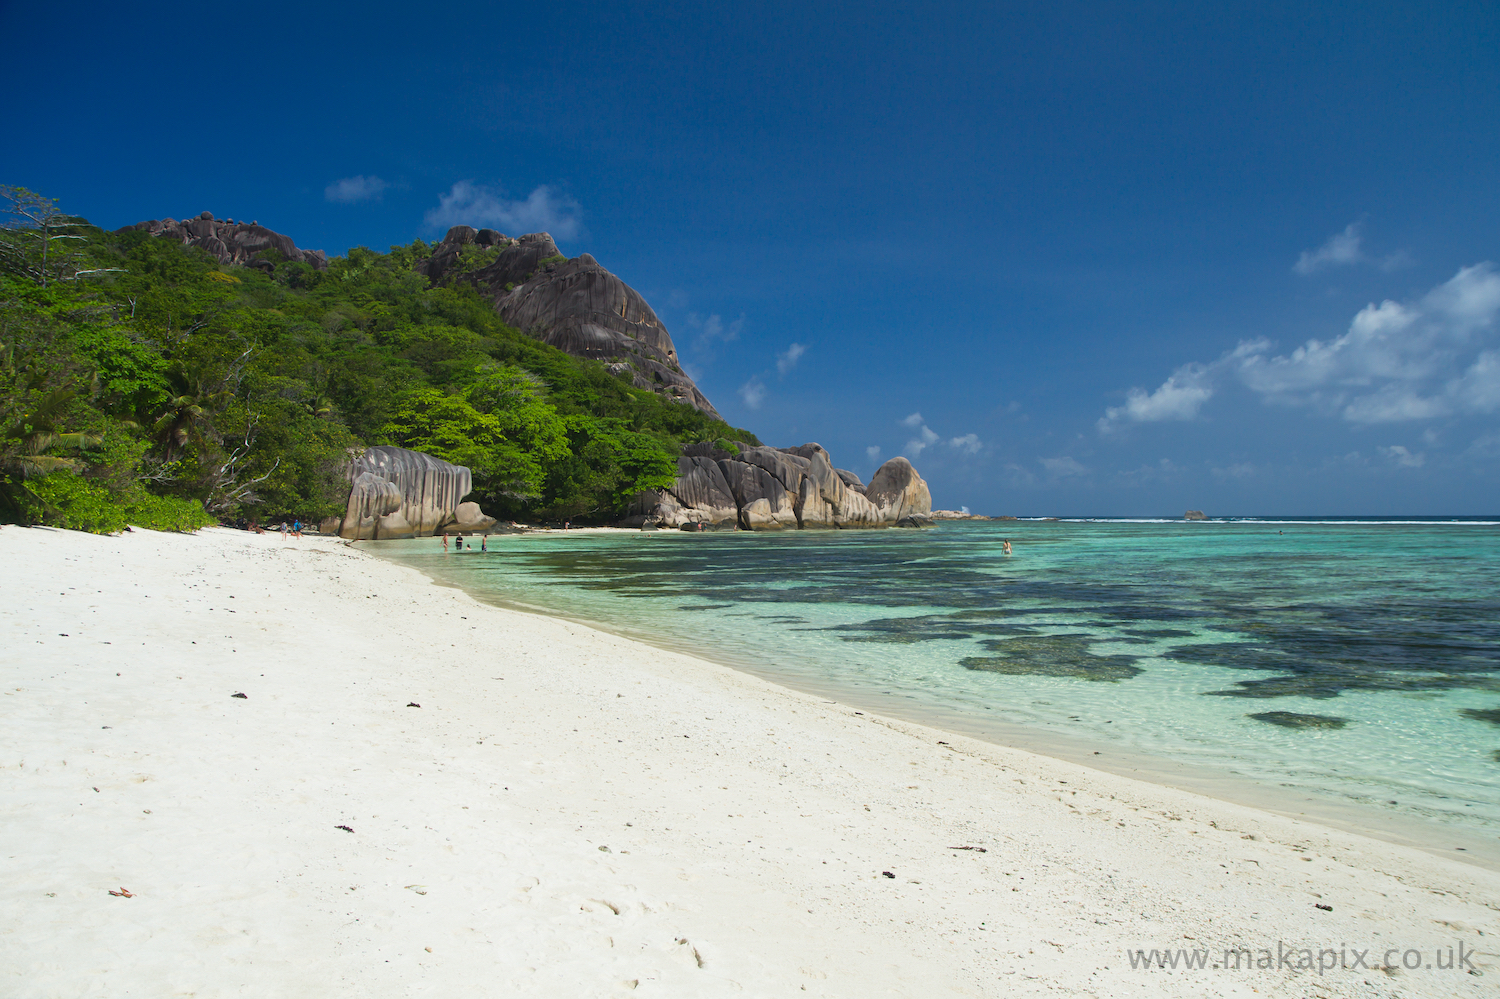 Anse Source d'Argent beach, La Digue island, Seychelles